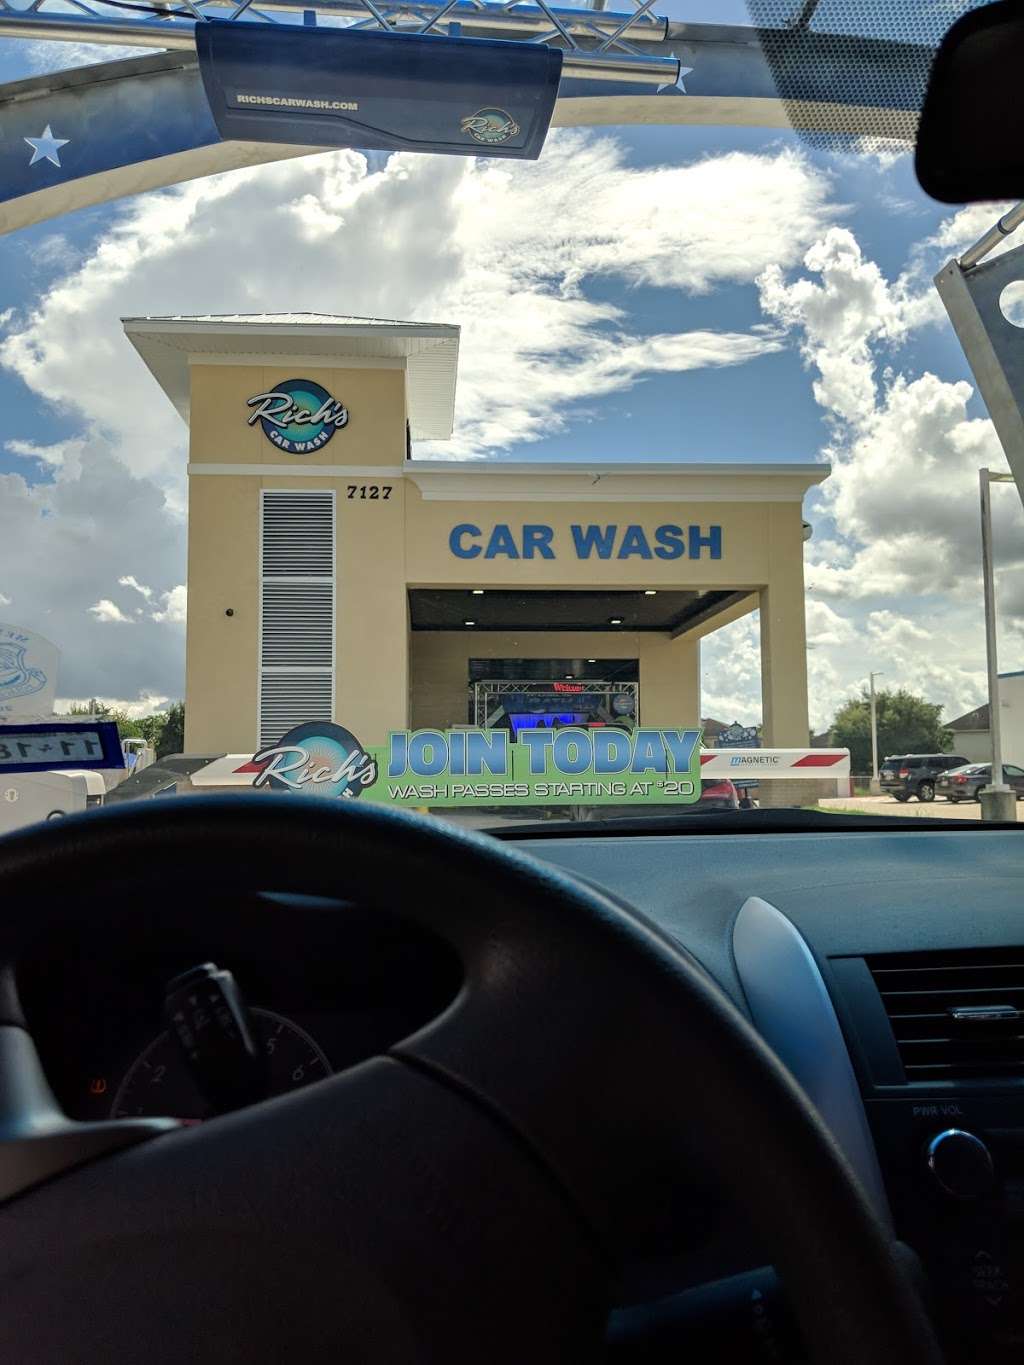 Richs Car Wash | 7127 FM 1464, Richmond, TX 77407